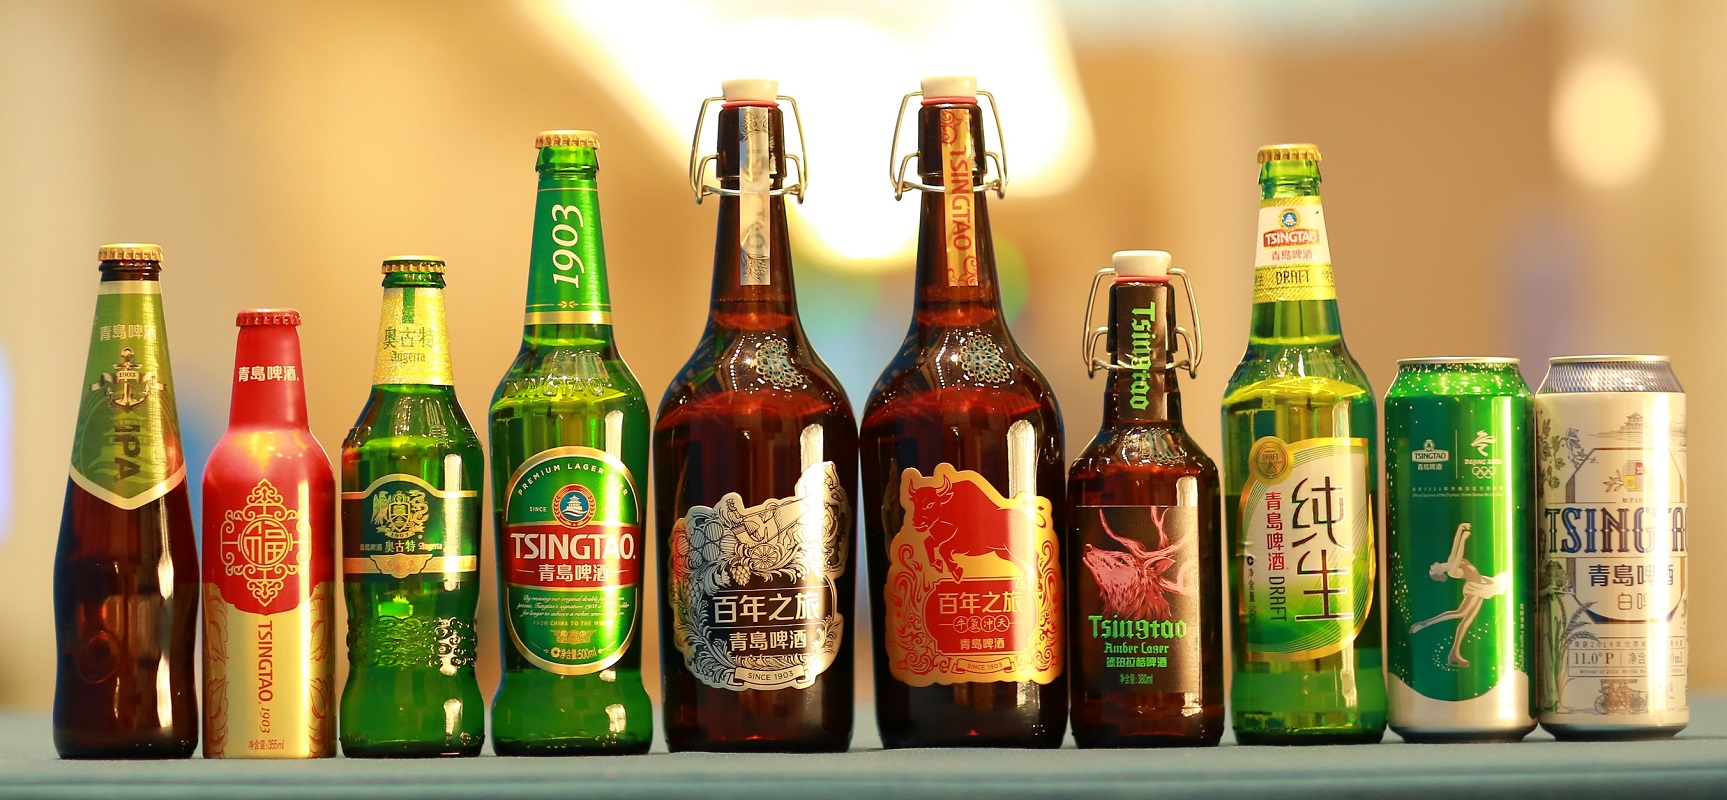 高端化战略价值凸显 青岛啤酒前三季度净利润25.9亿创历史新高_思维财经